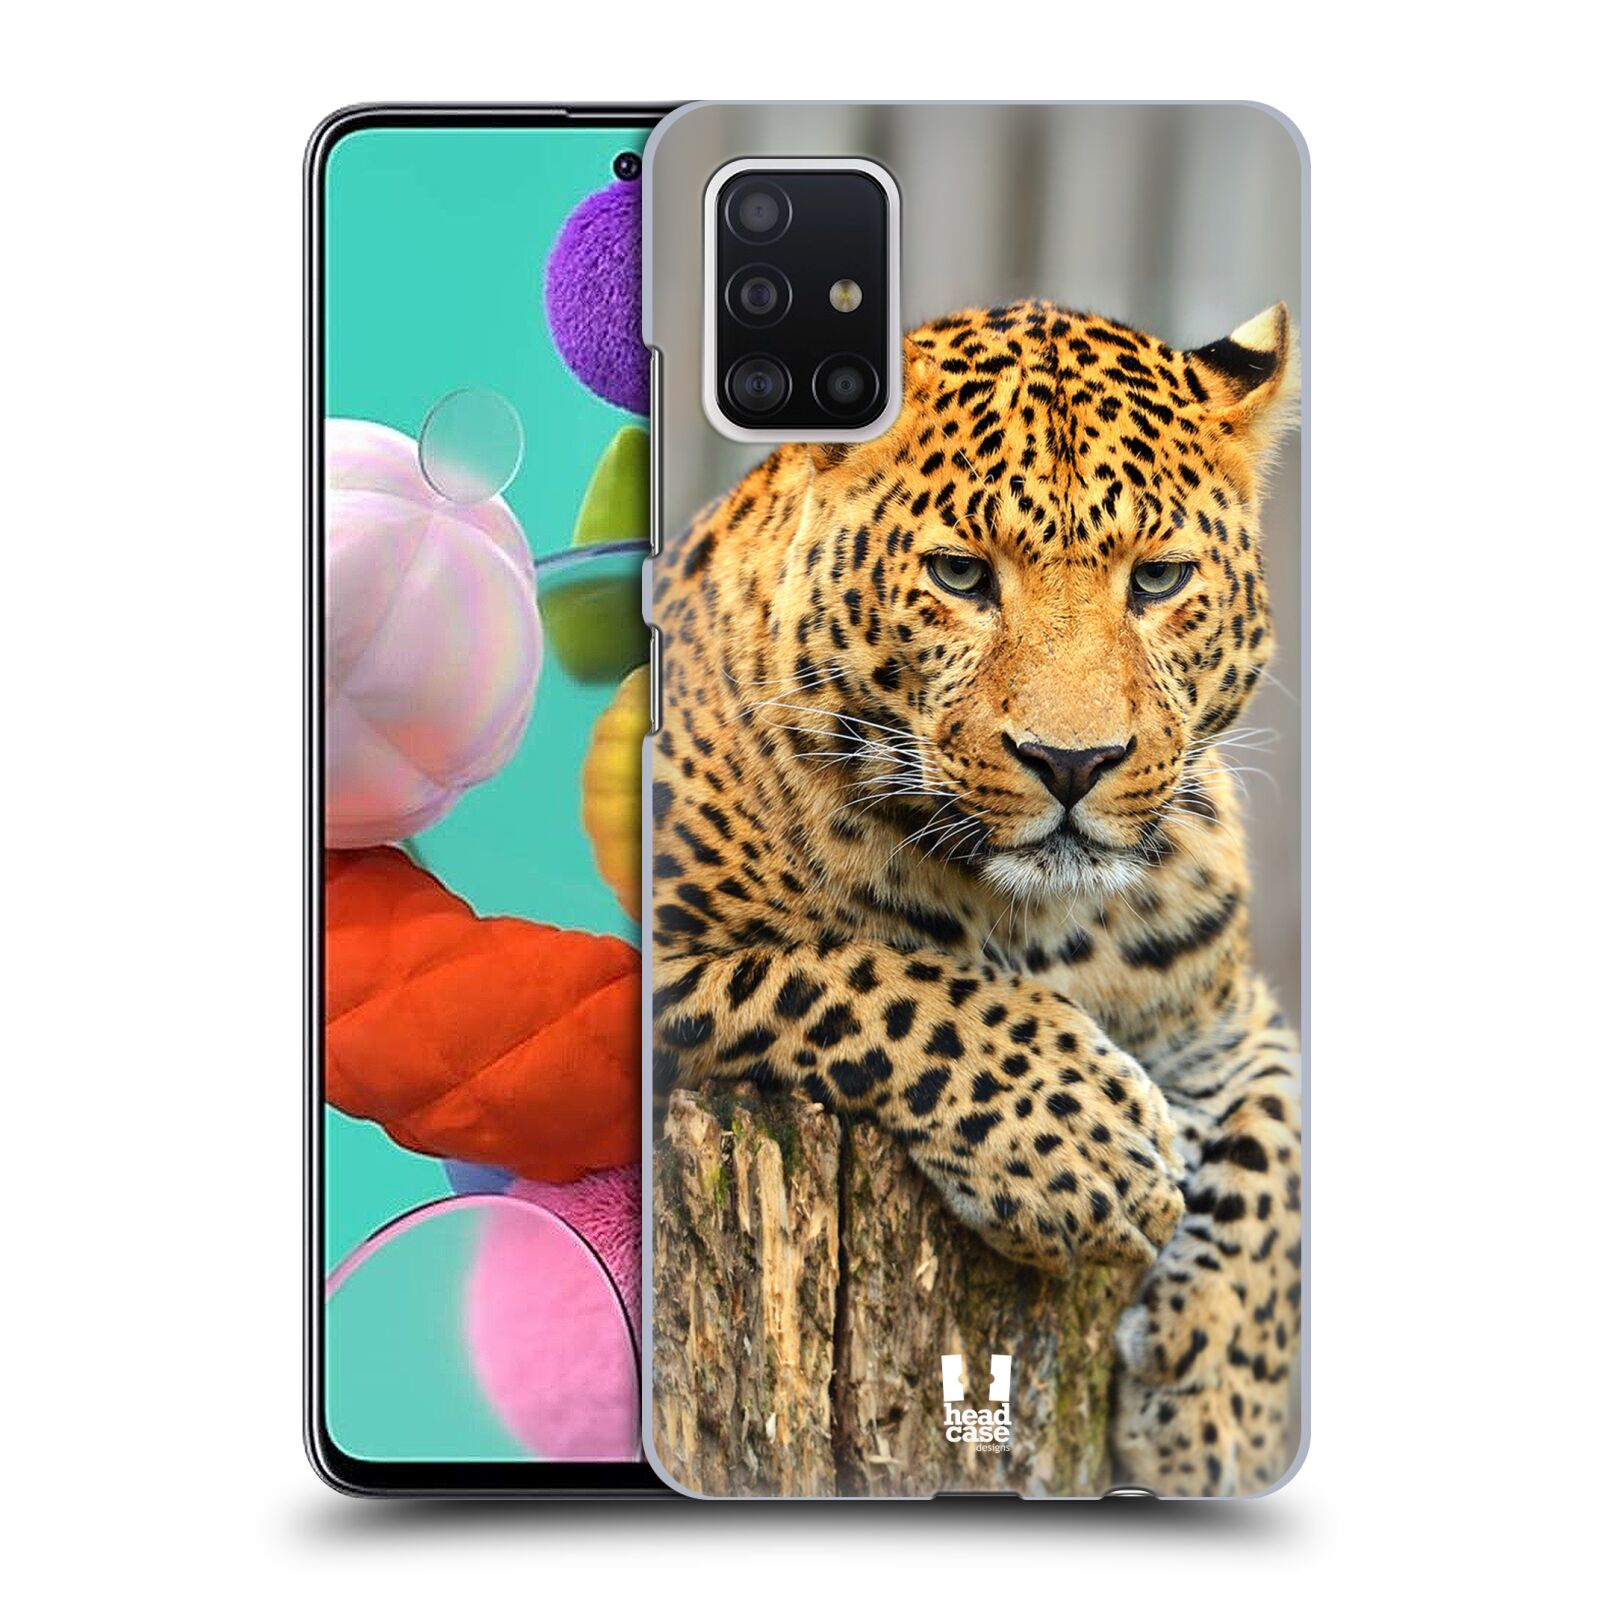 Pouzdro na mobil Samsung Galaxy A51 - HEAD CASE - vzor Divočina, Divoký život a zvířata foto LEOPARD PORTRÉT